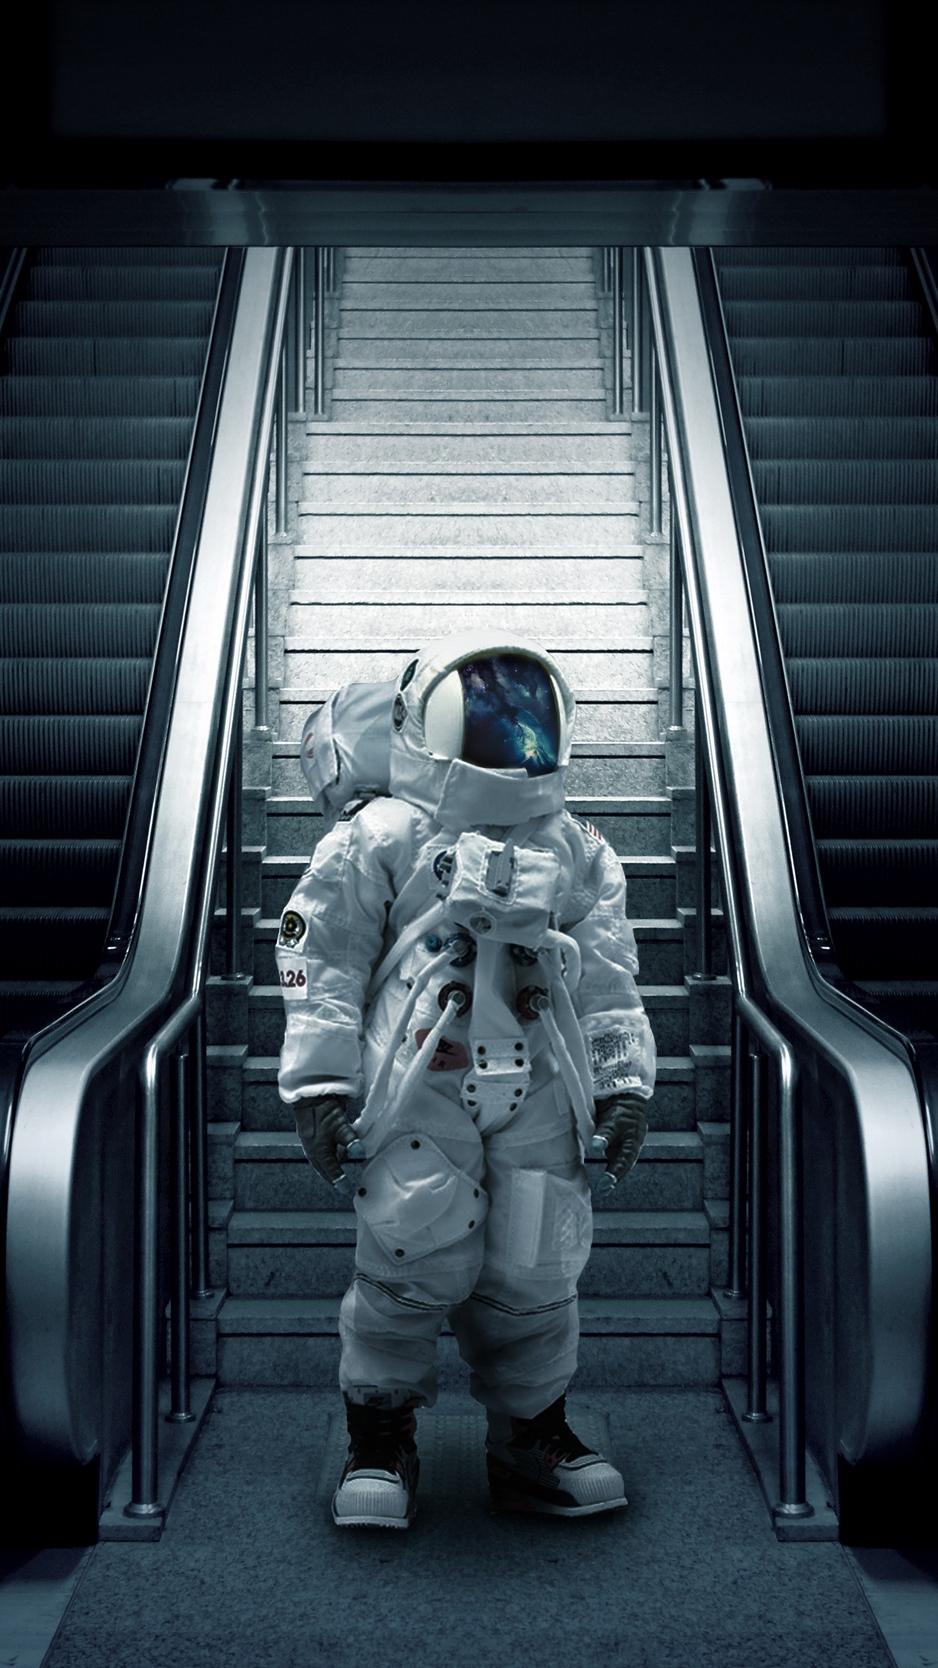 Download wallpaper 938x1668 astronaut, cosmonaut, spacesuit